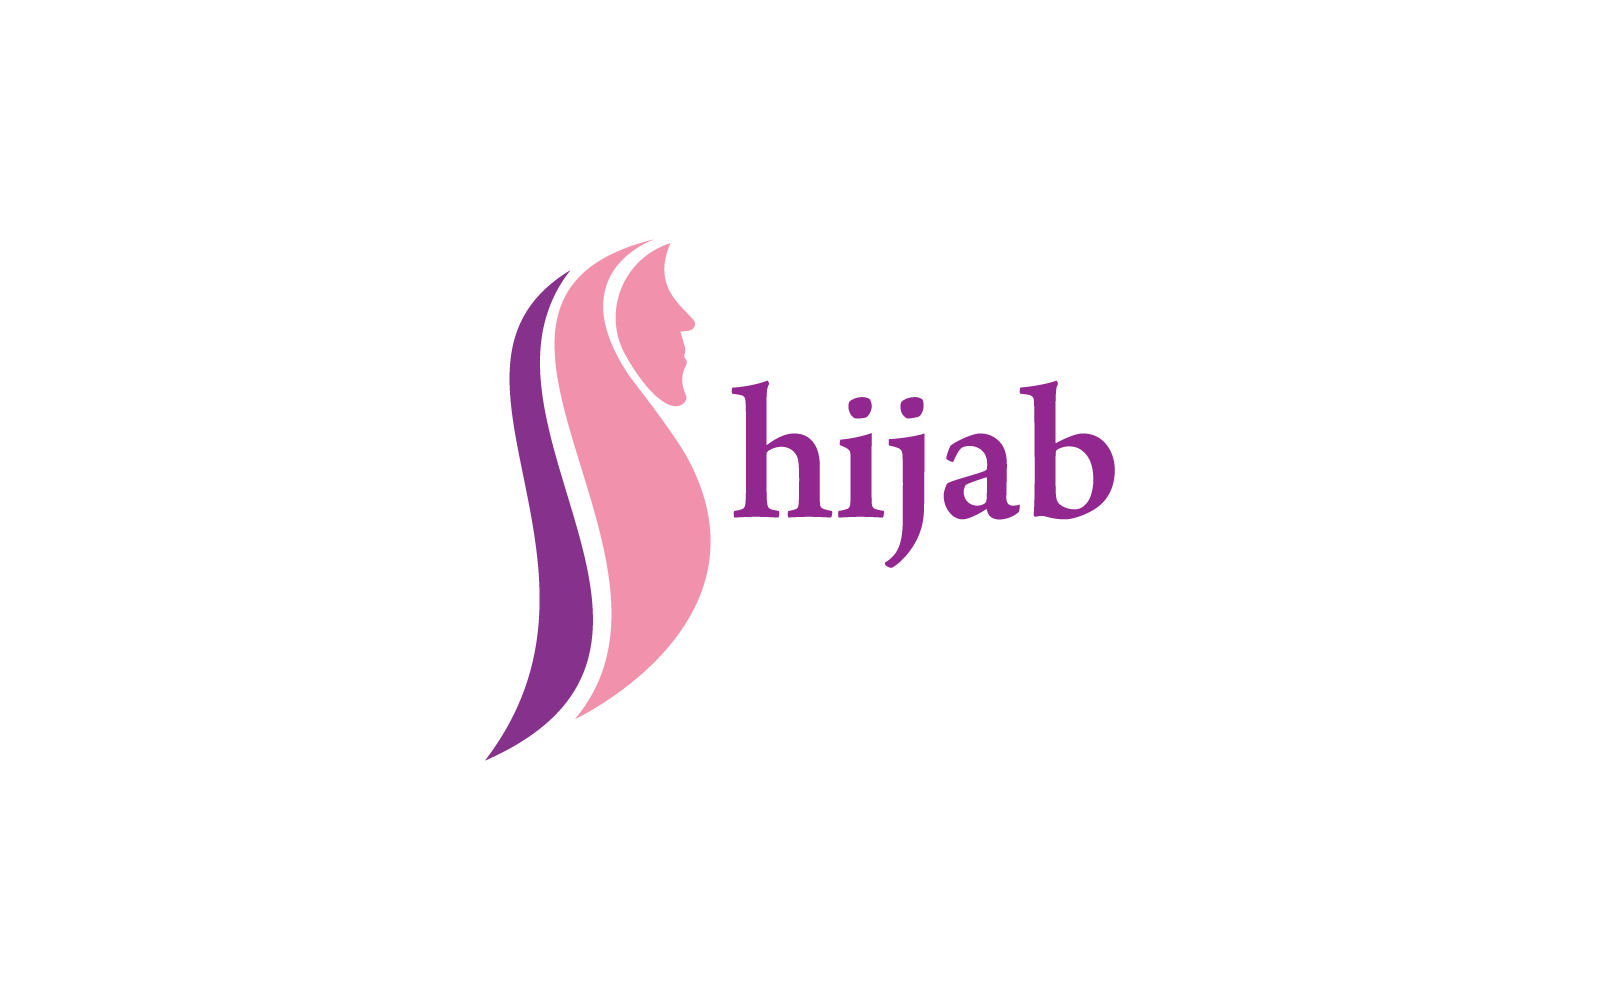 Hijab butik logotyp vektor illustration mall